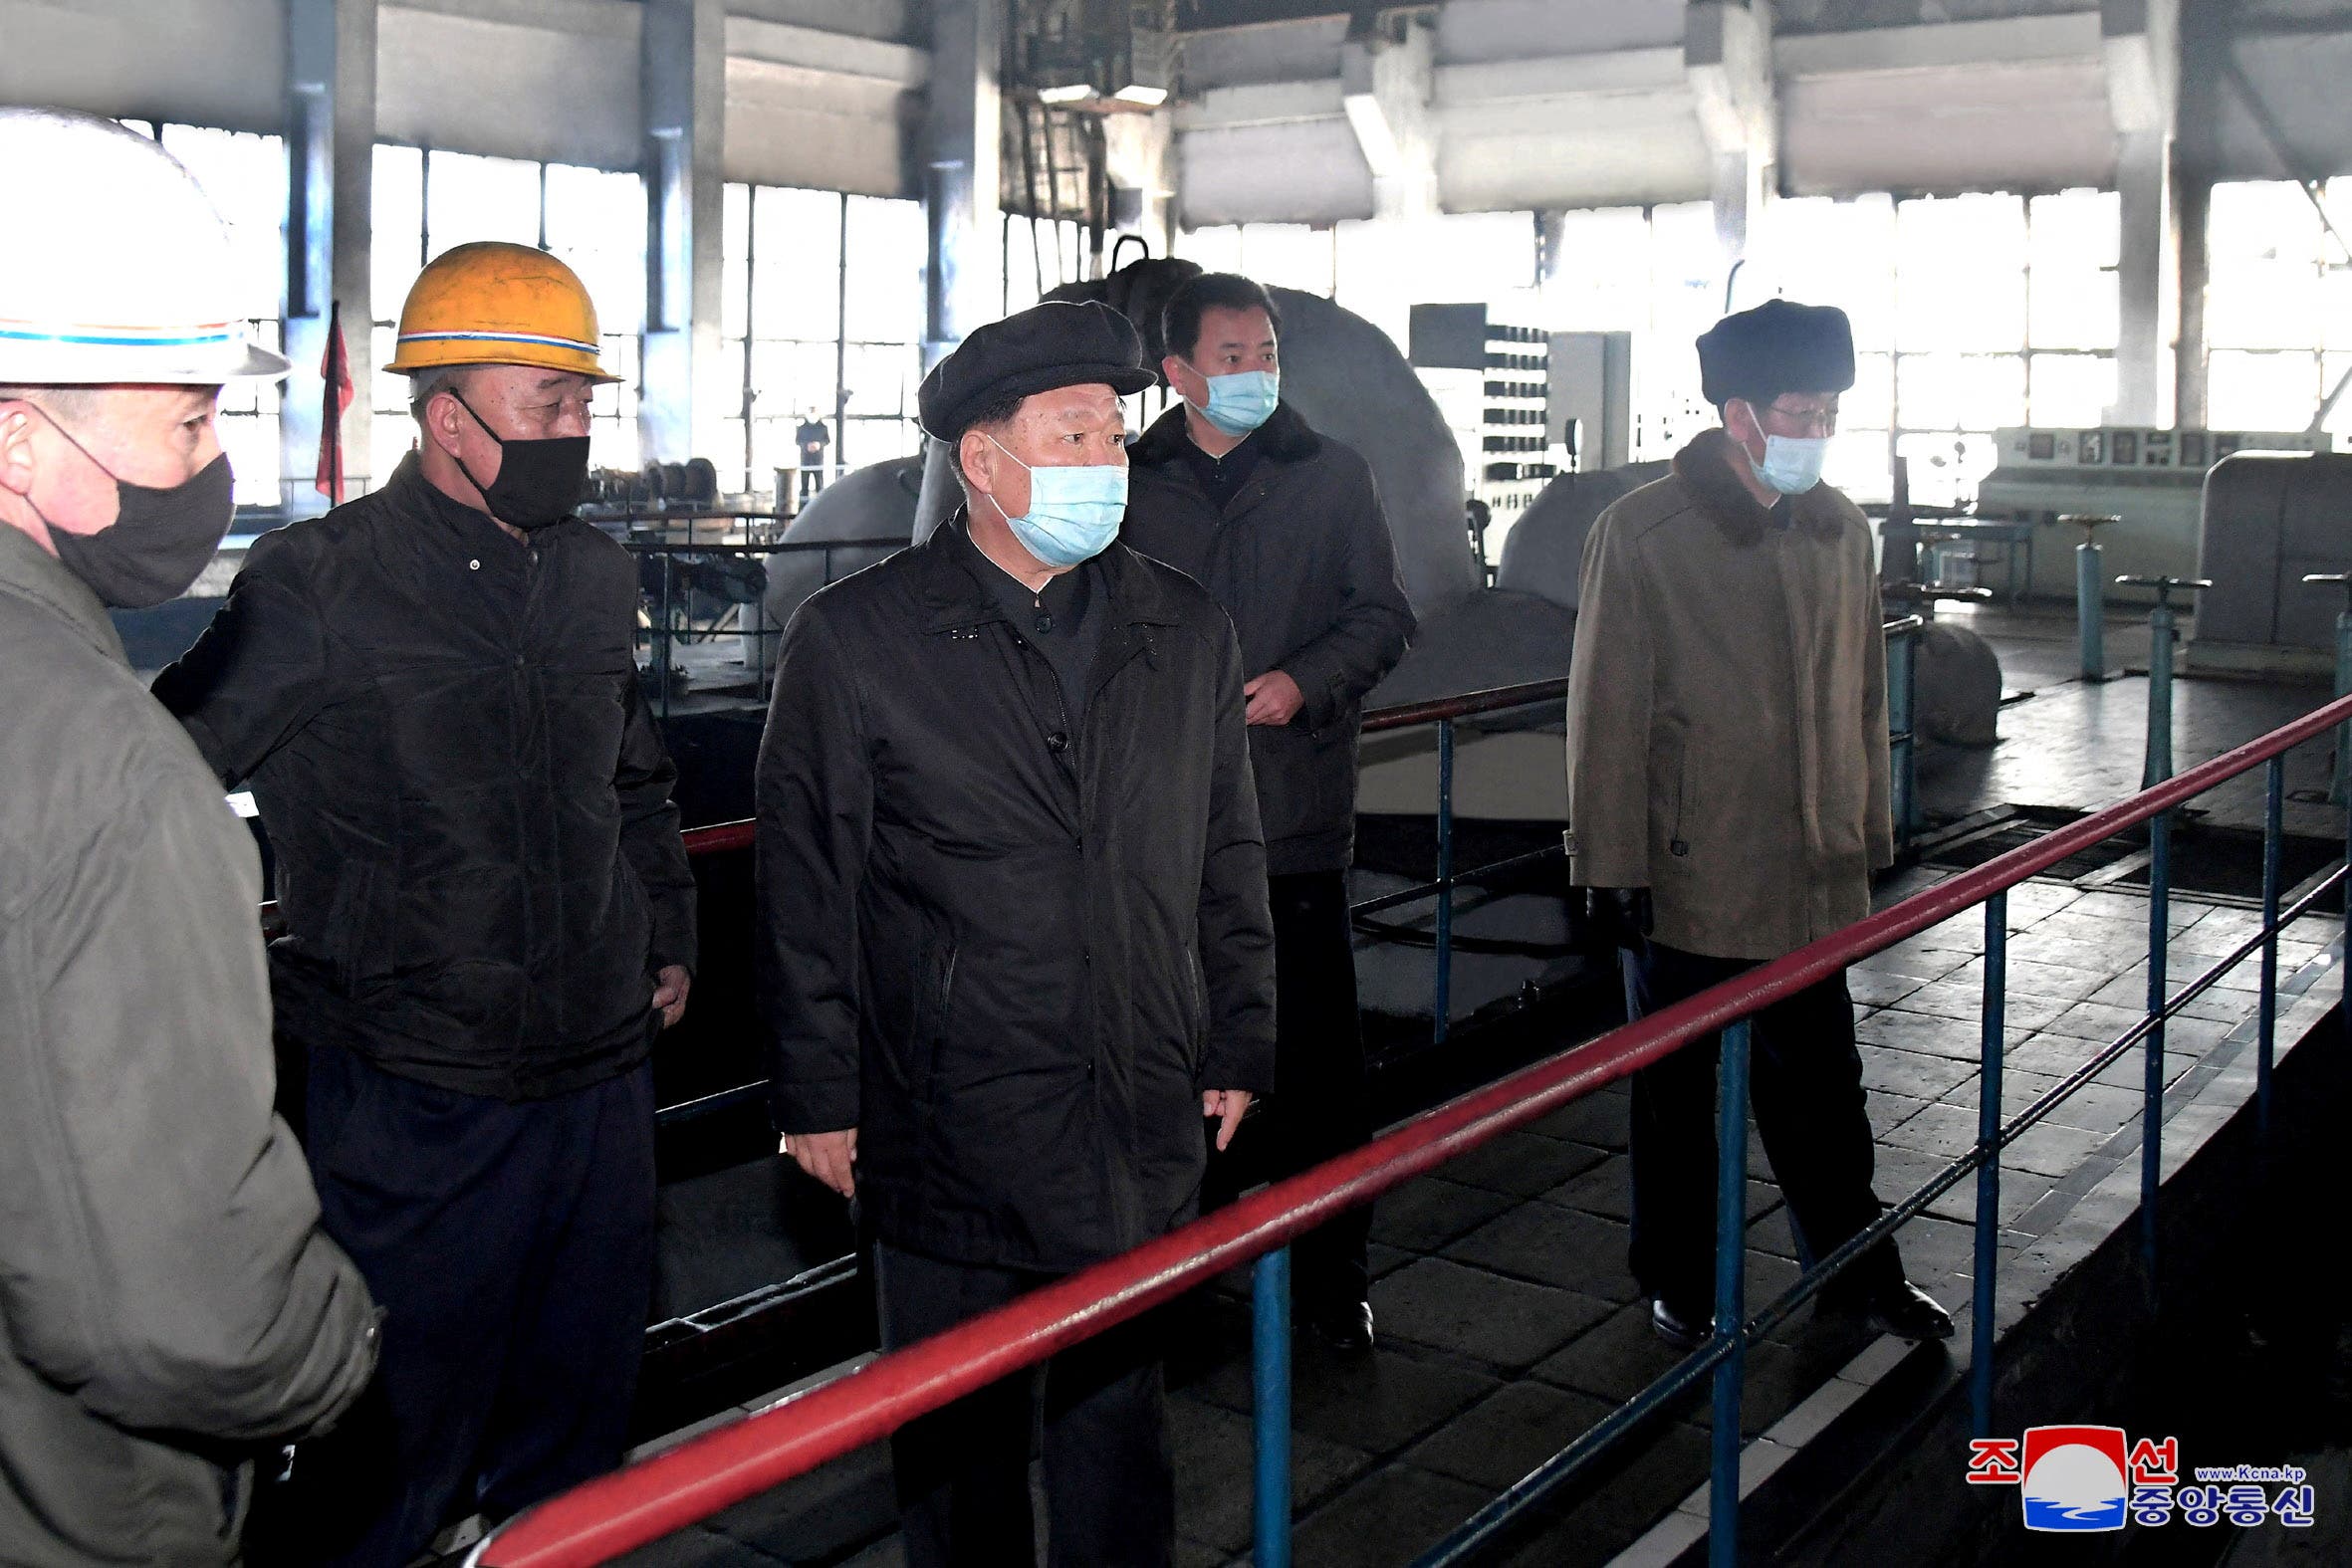 زعيم كوريا الشمالية كيم يونغ أون خلال زيارته لمنشأة طاقة في بيونغ يانغ أمس الثلاثاء